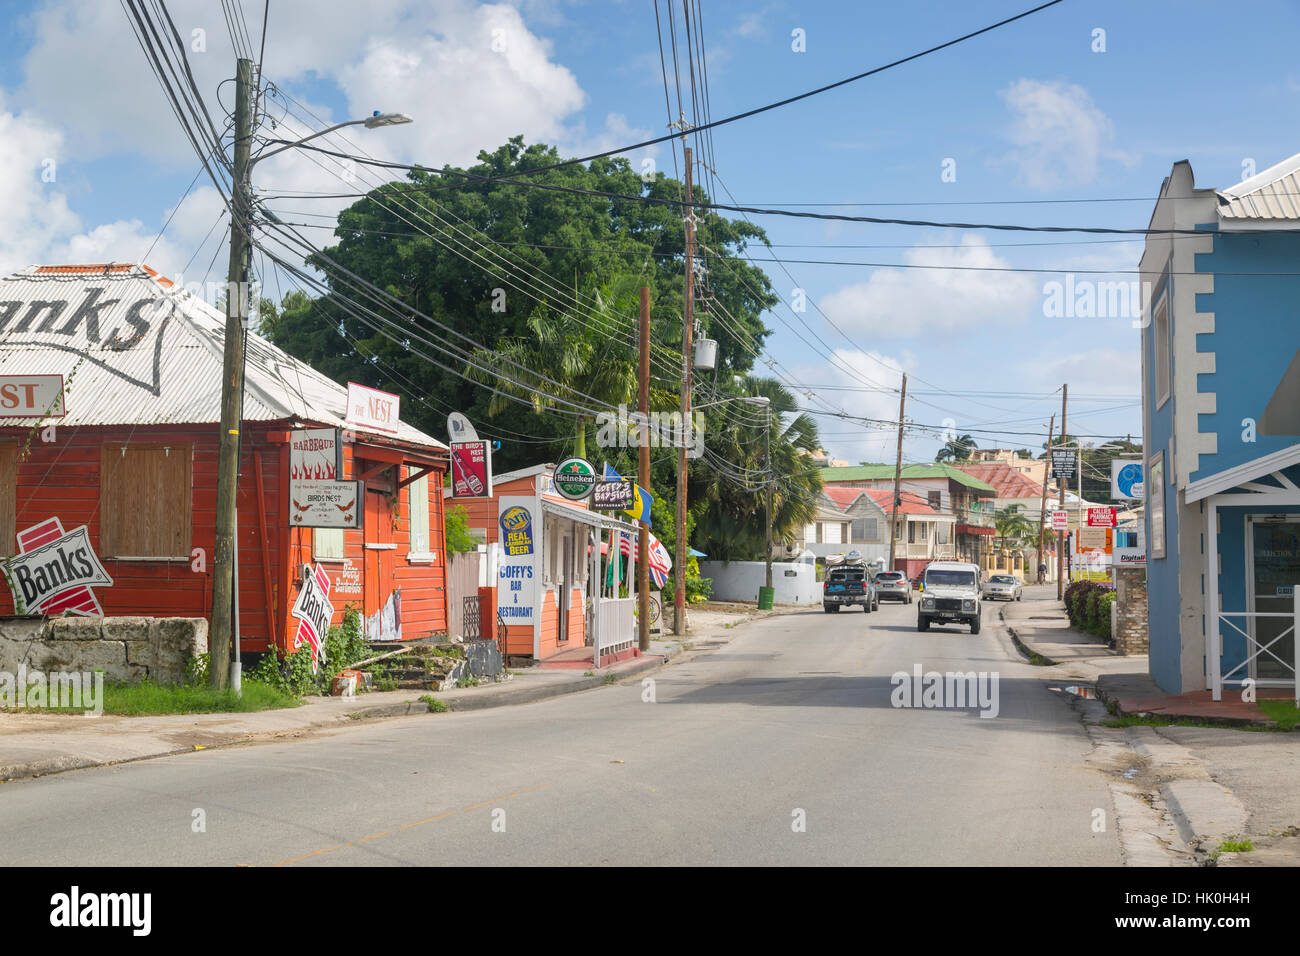 La rue Bay, Bridgetown, St Michael, à la Barbade, Antilles, Caraïbes, Amérique Centrale Banque D'Images